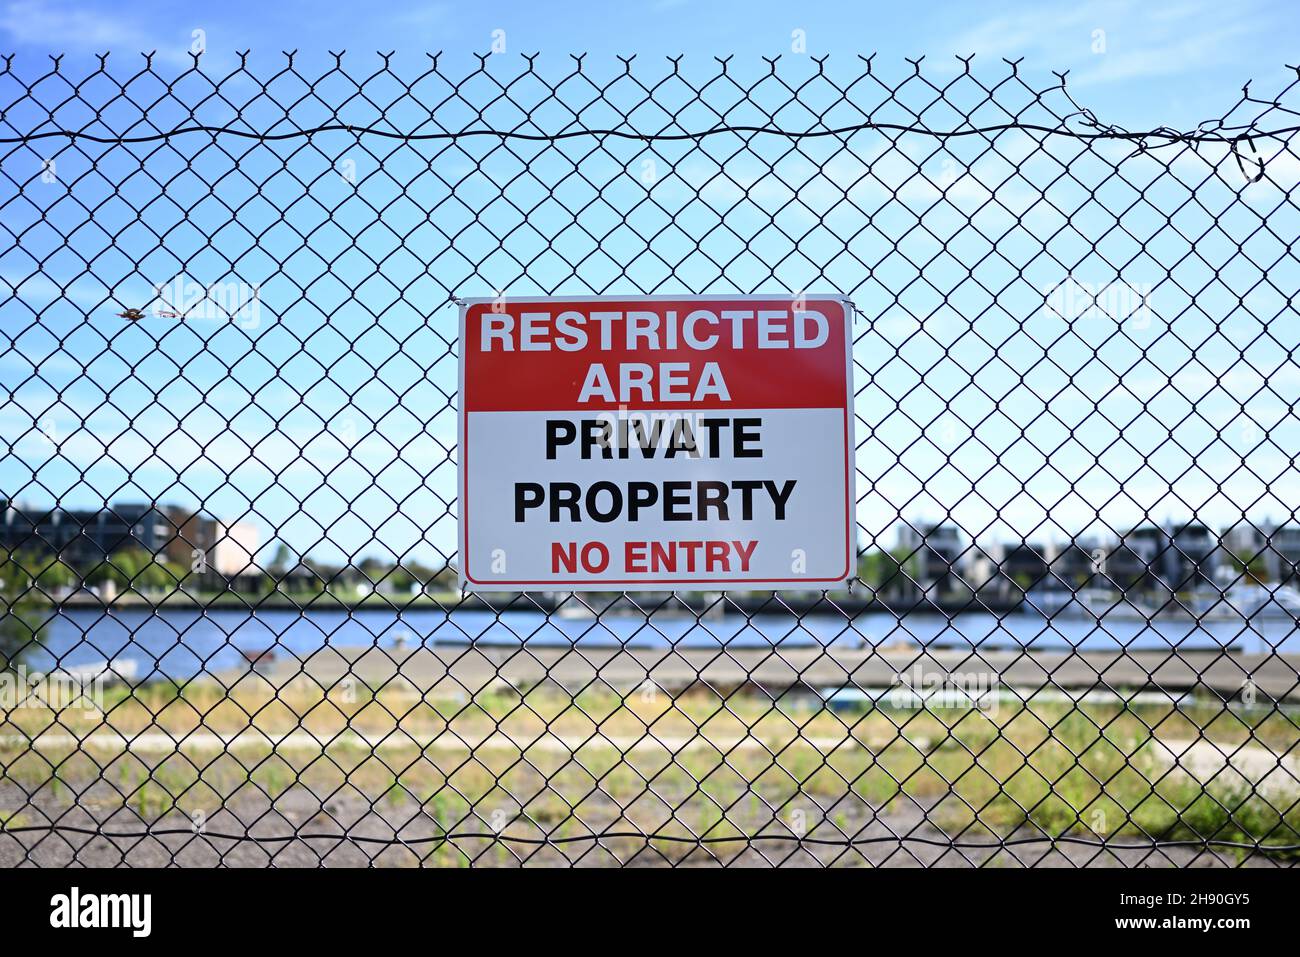 Un panneau de zone restreinte, indiquant qu'au-delà de la clôture se trouve une propriété privée et qu'aucune entrée n'est autorisée, sur une clôture Banque D'Images